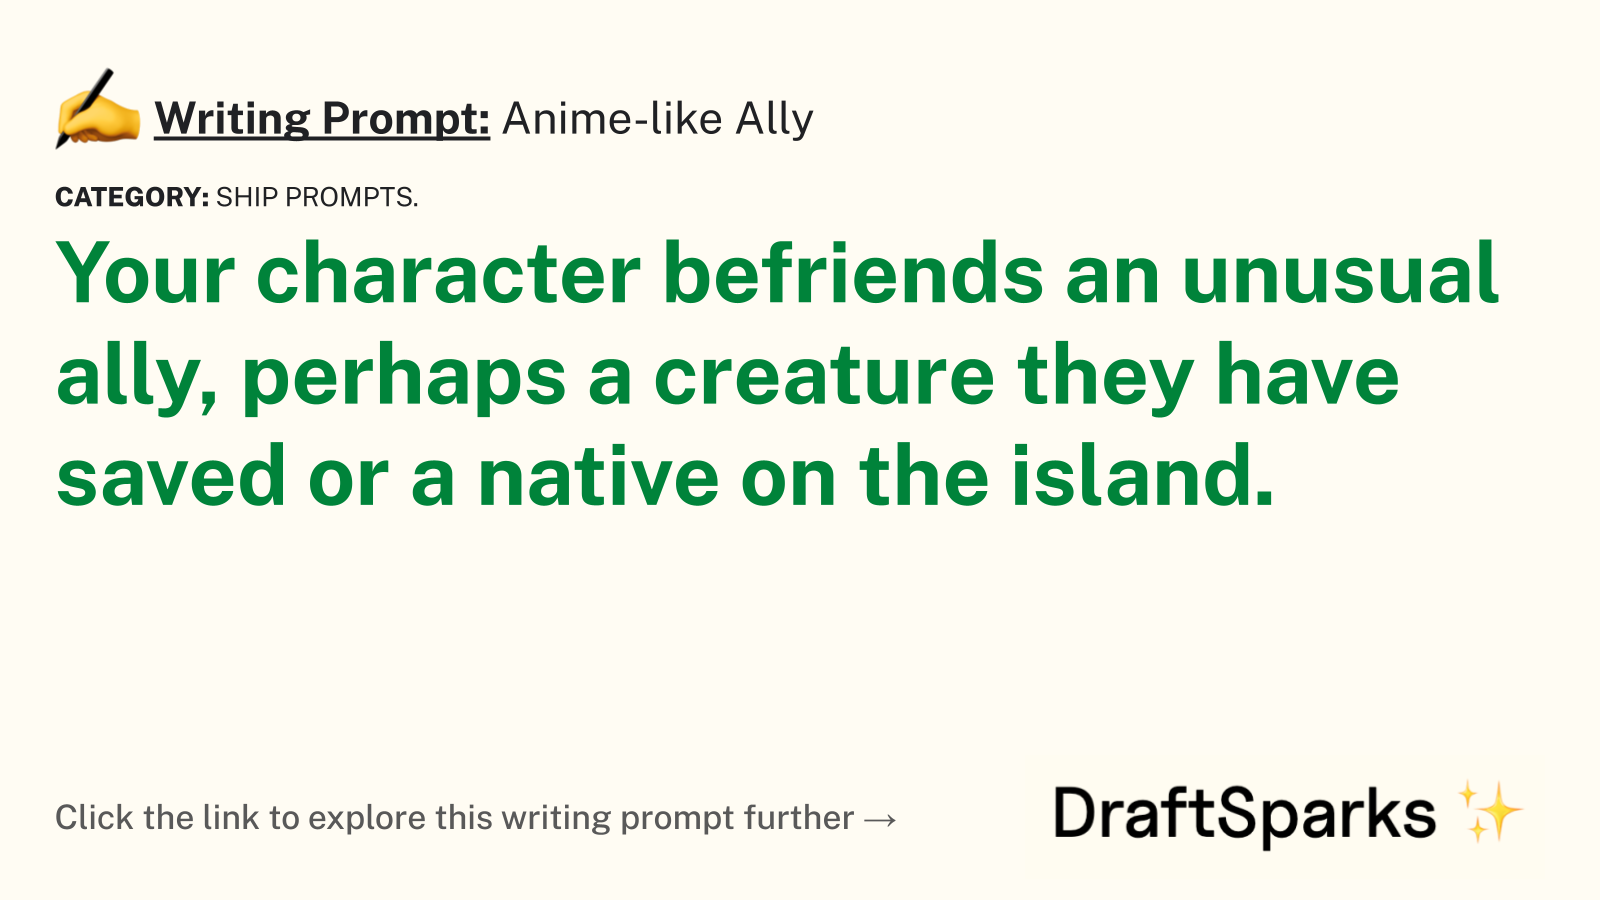 Anime-like Ally